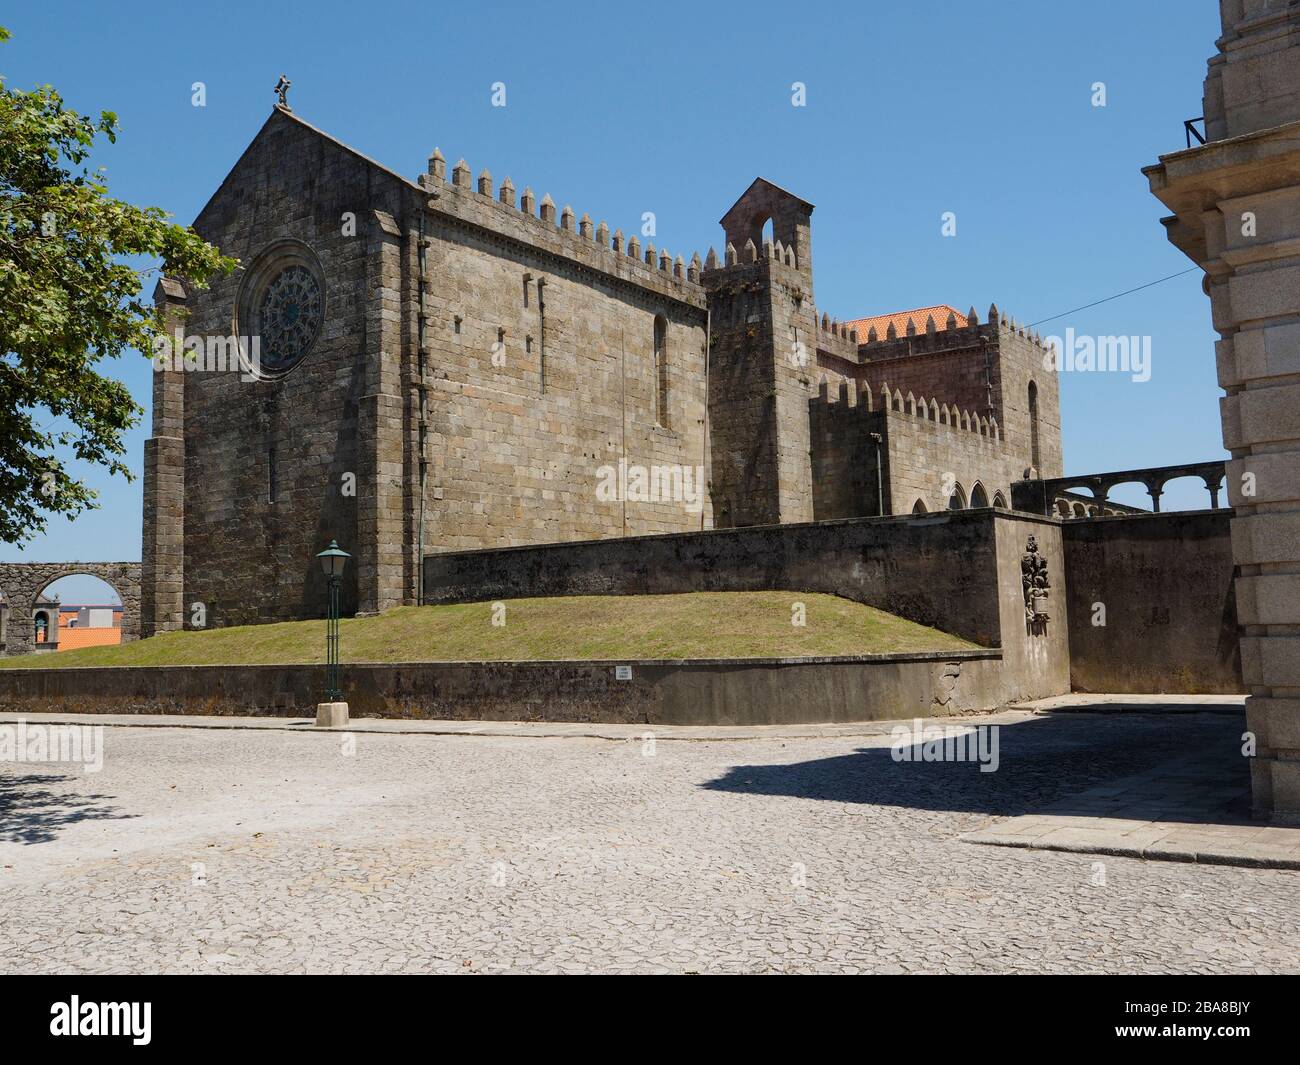 Mosteiro de Santa monastery church, in Villa do Conde, Portugal Stock Photo